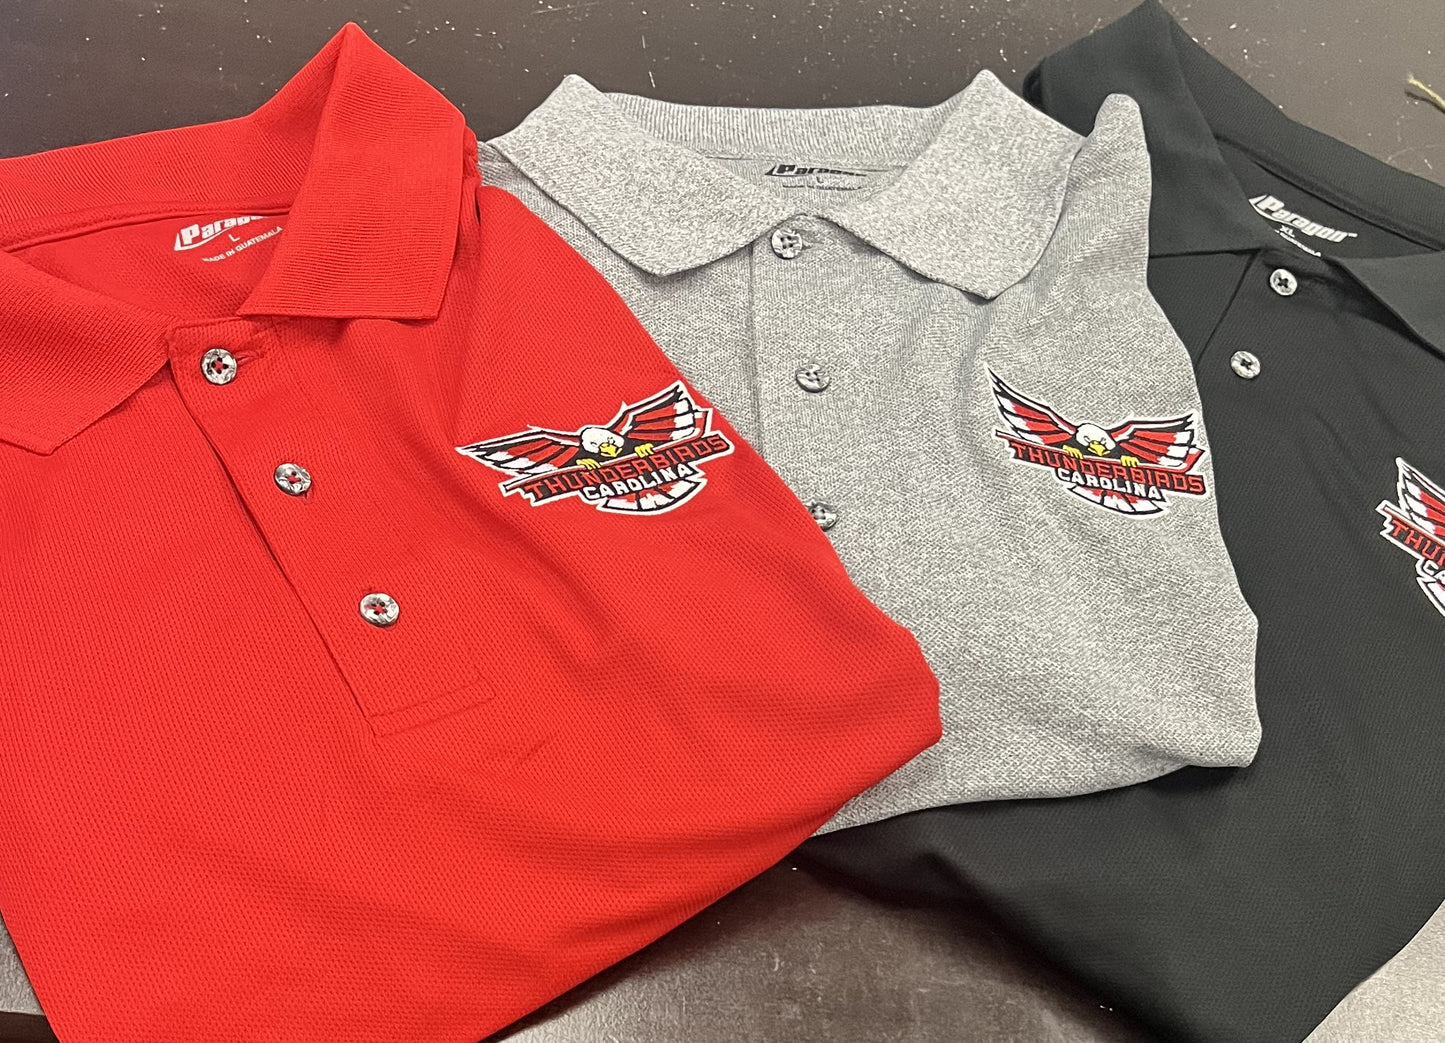 Polo's Shirts with Thunderbirds logo